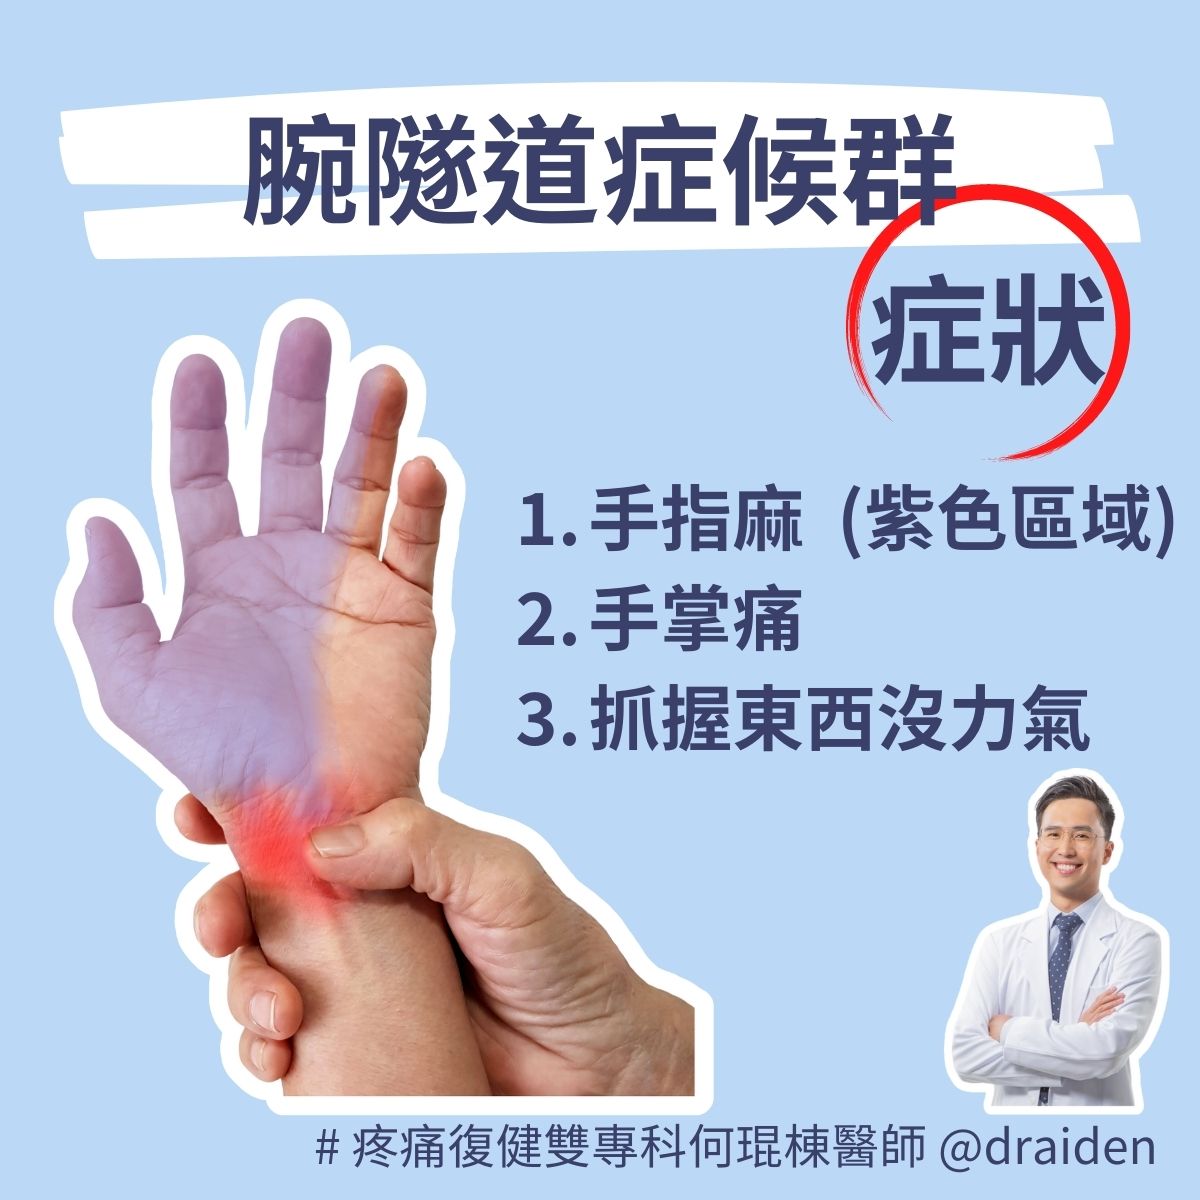 手指麻、手掌痛及抓握東西沒力氣都是腕隧道症候群或滑鼠手的症狀